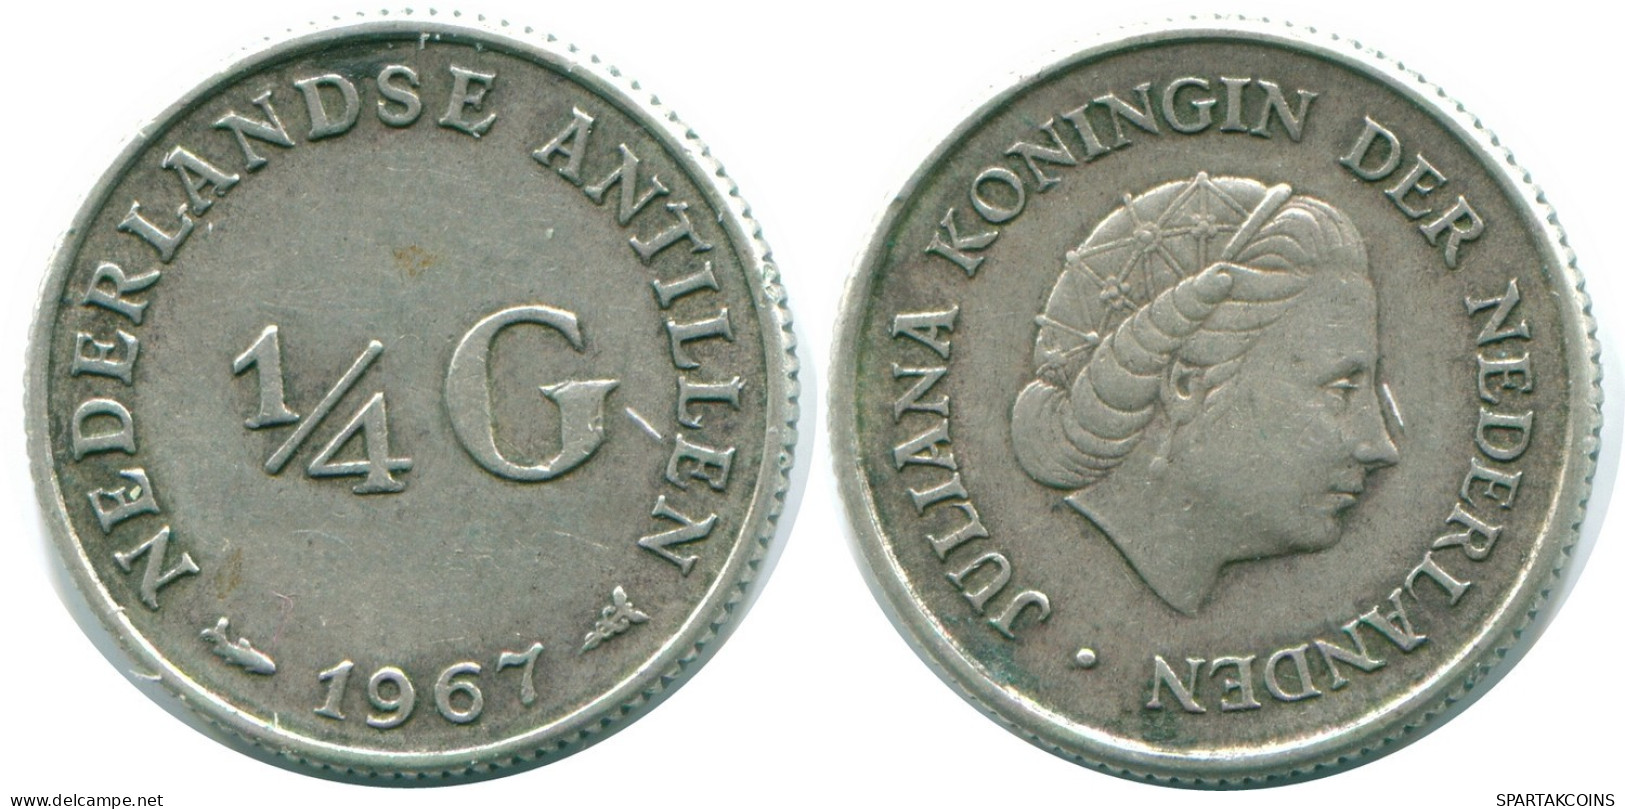 1/4 GULDEN 1967 NIEDERLÄNDISCHE ANTILLEN SILBER Koloniale Münze #NL11590.4.D.A - Antilles Néerlandaises